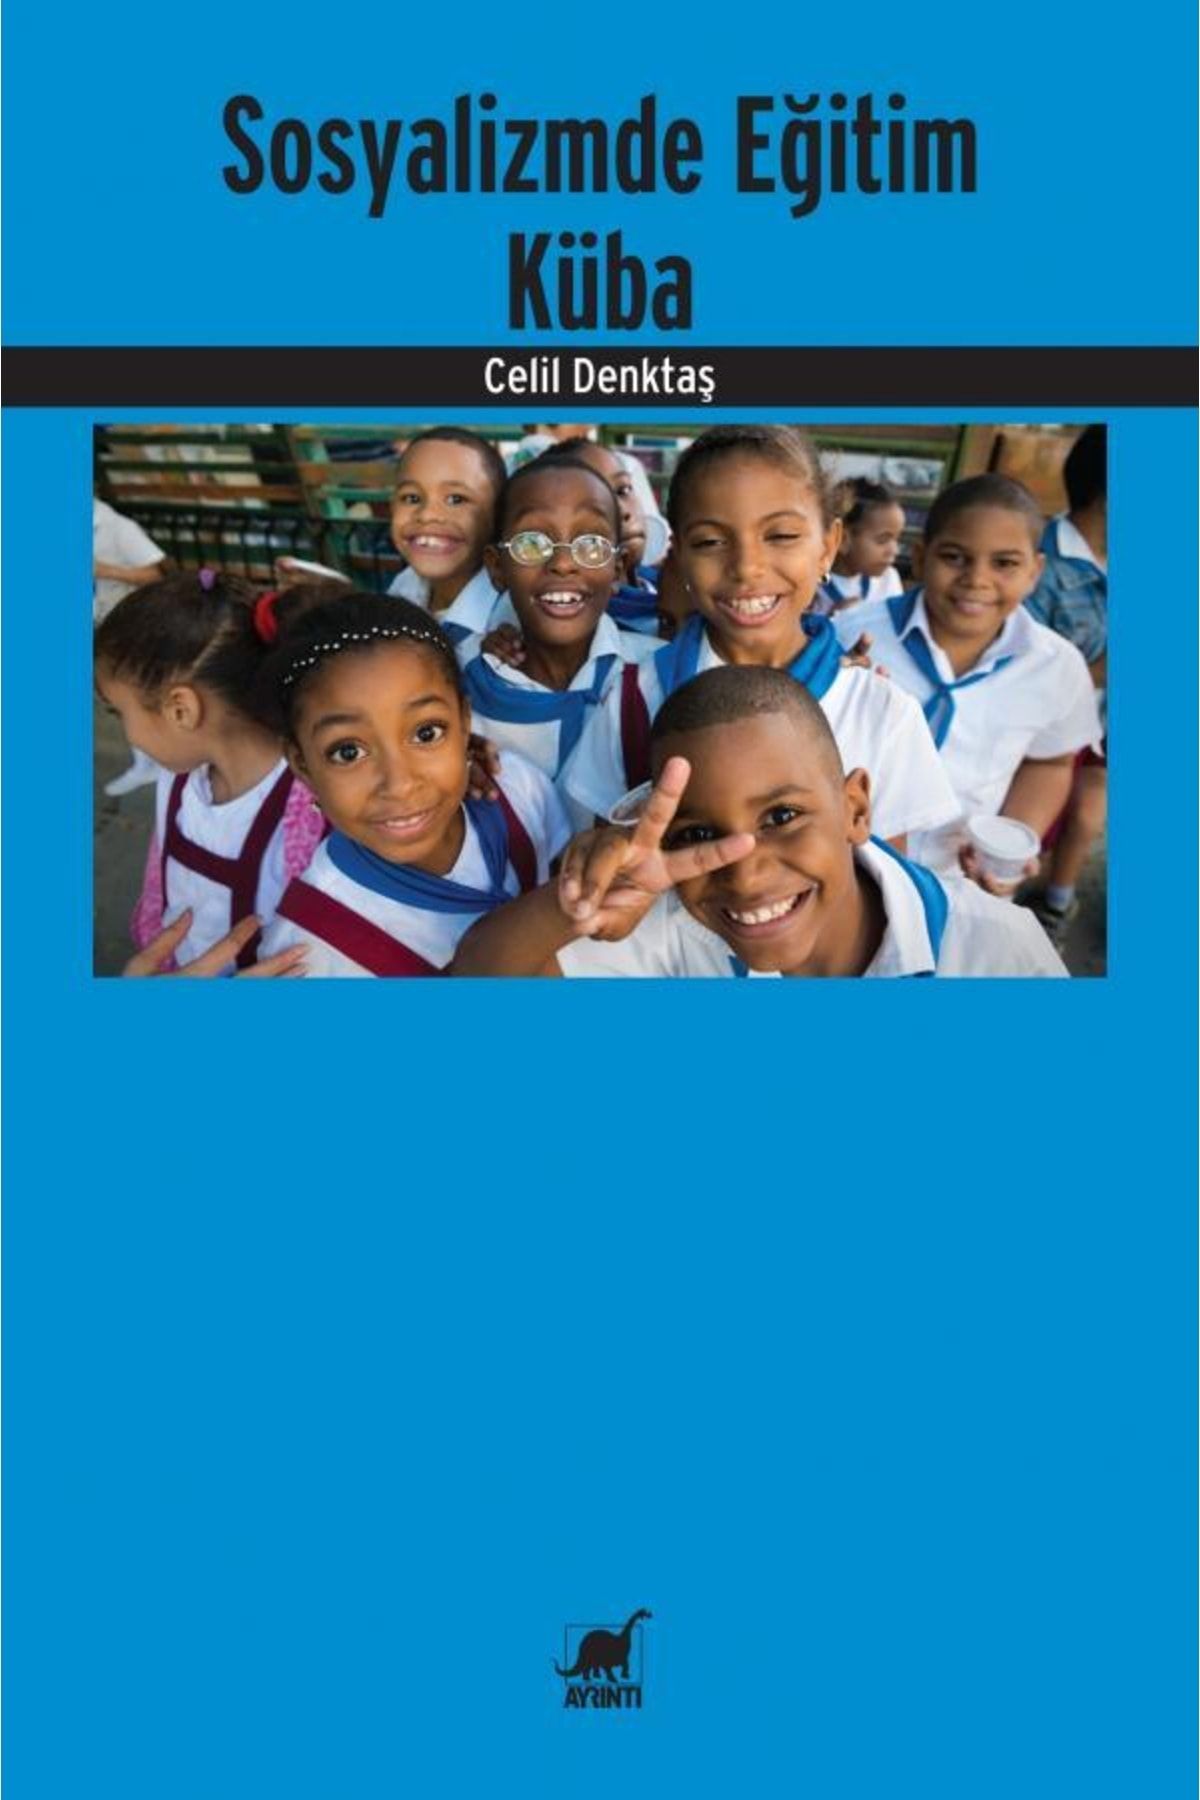 Ayrıntı Yayınları Sosyalizmde Eğitim-küba Celil Denktaş